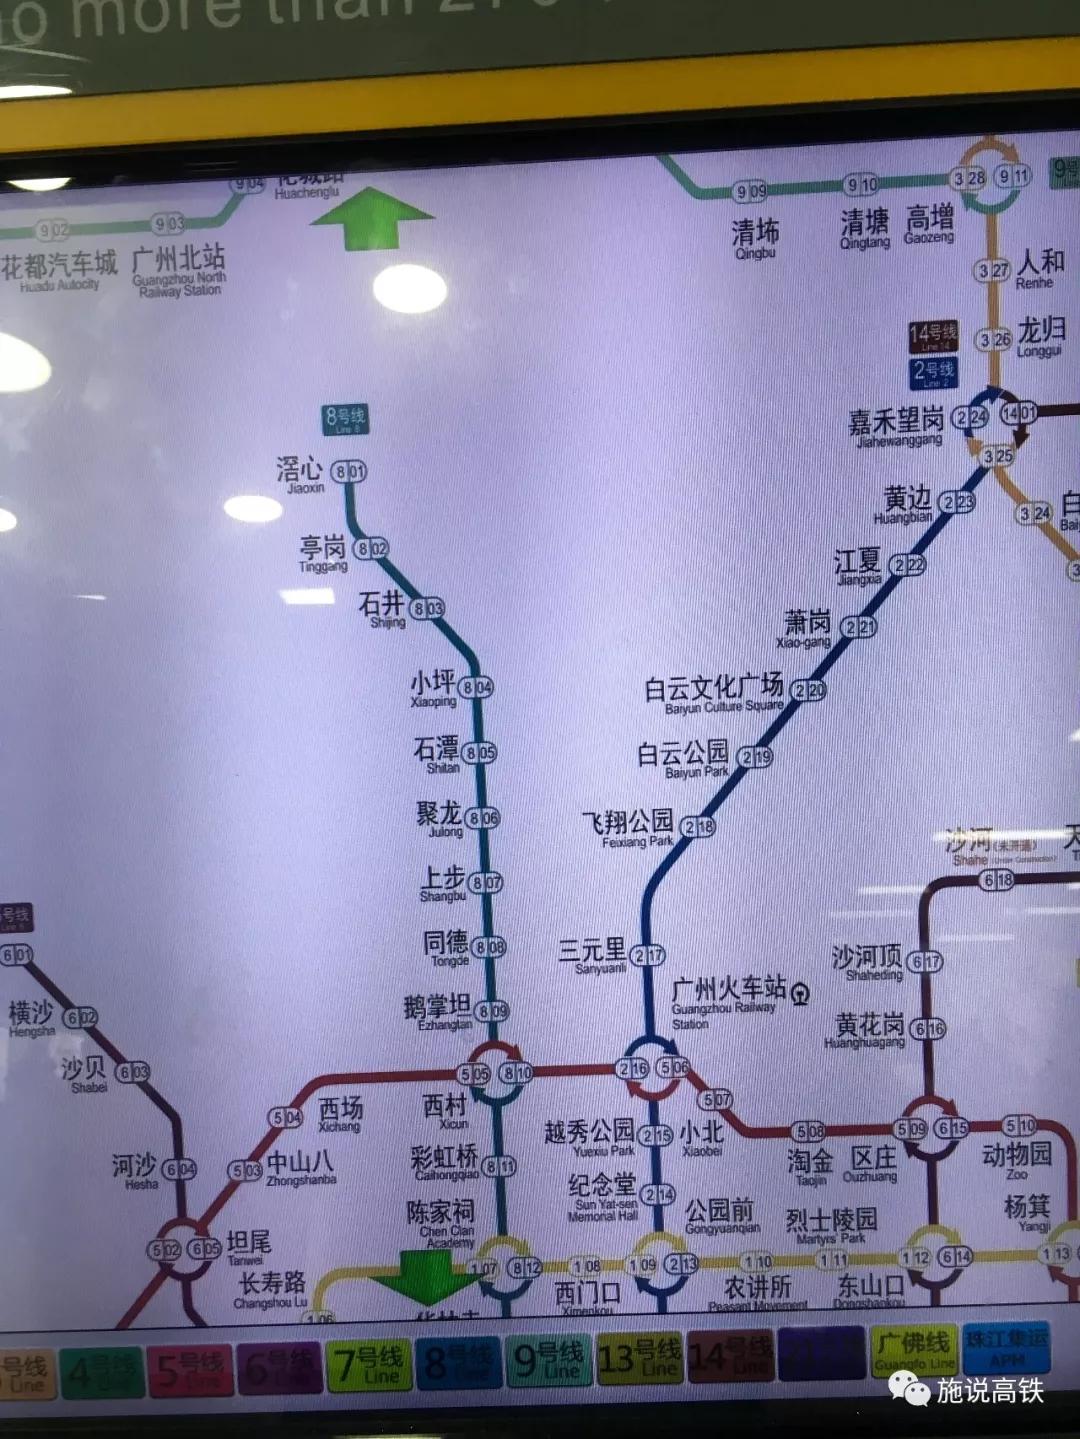 广州地铁自动售票机更新了地铁线路图两条地铁新线正式上线